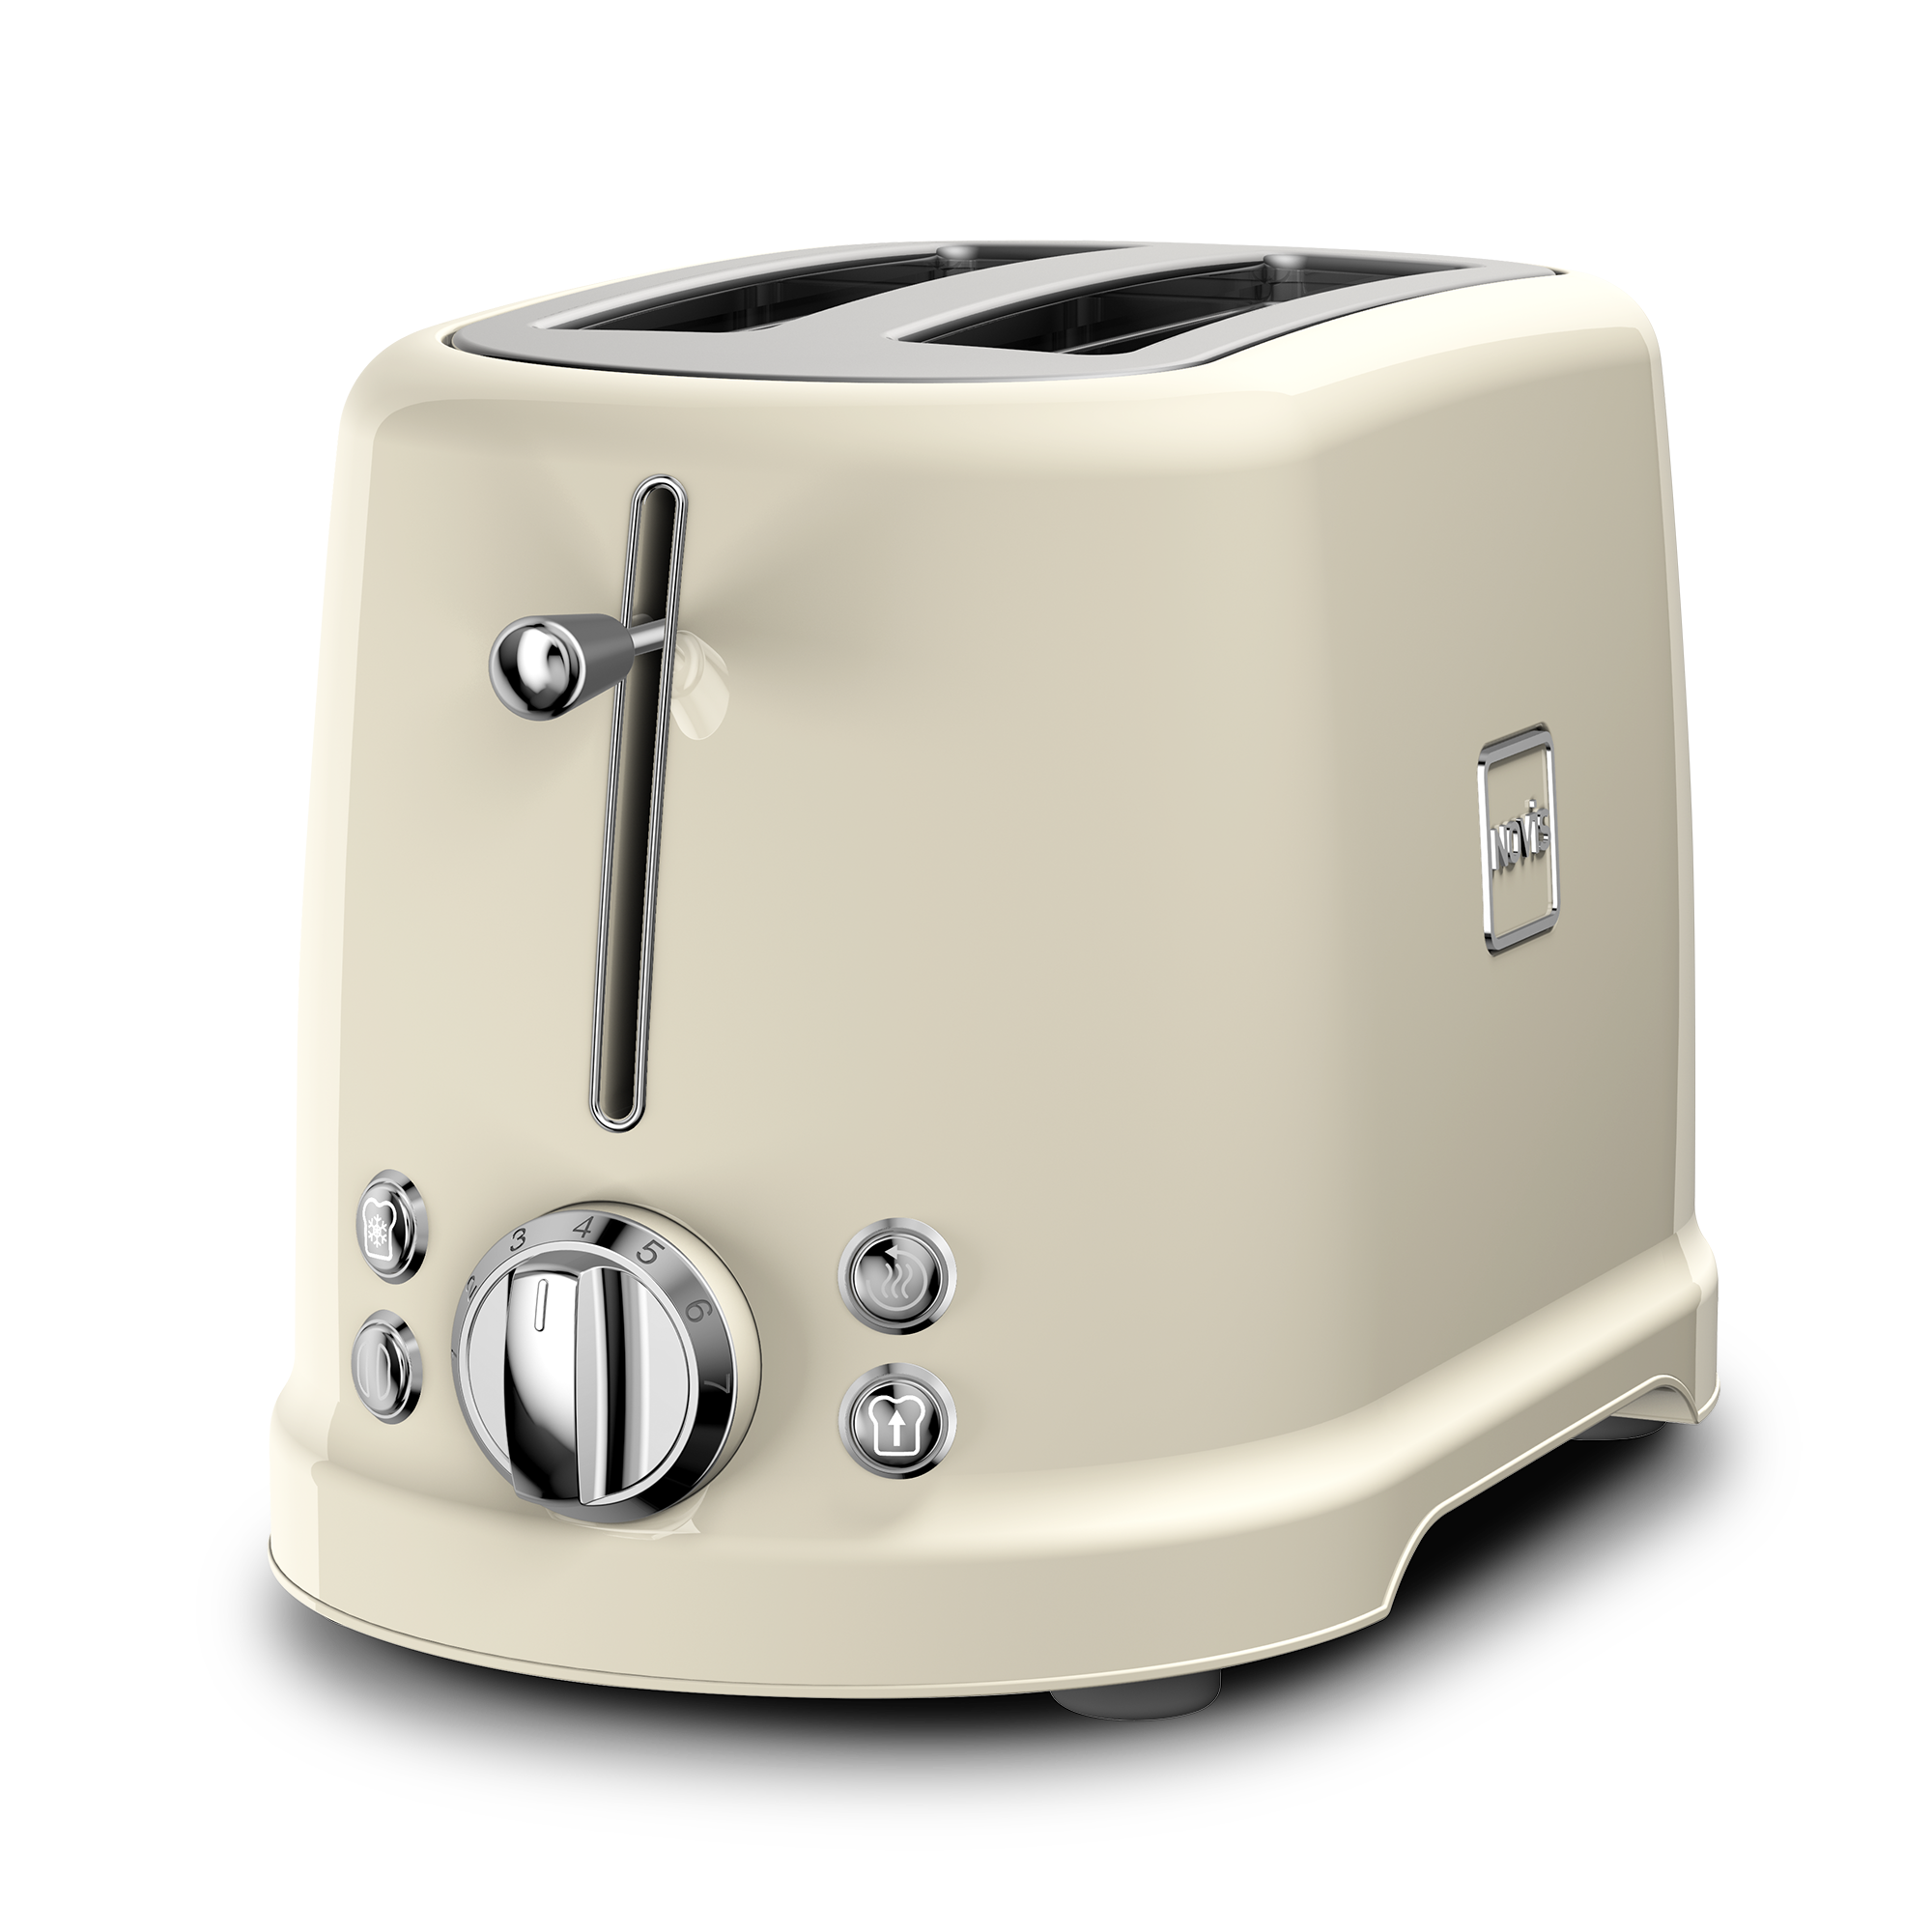 Novis Toaster T4